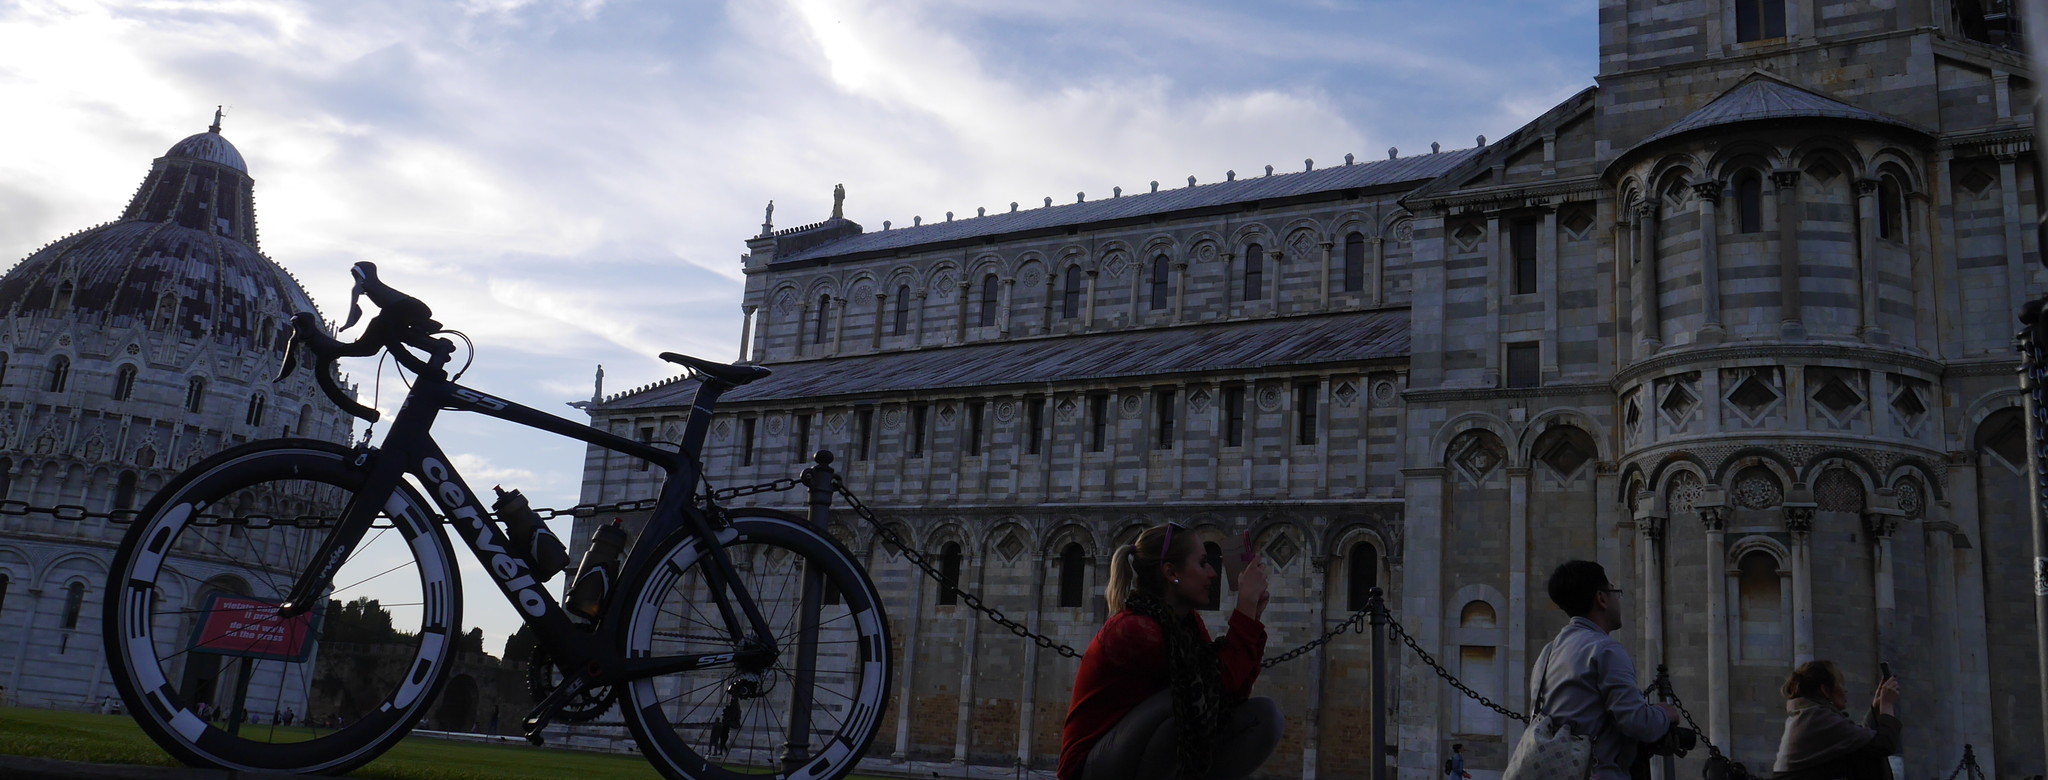 Unser Sehnsuchtsziel: Pisa